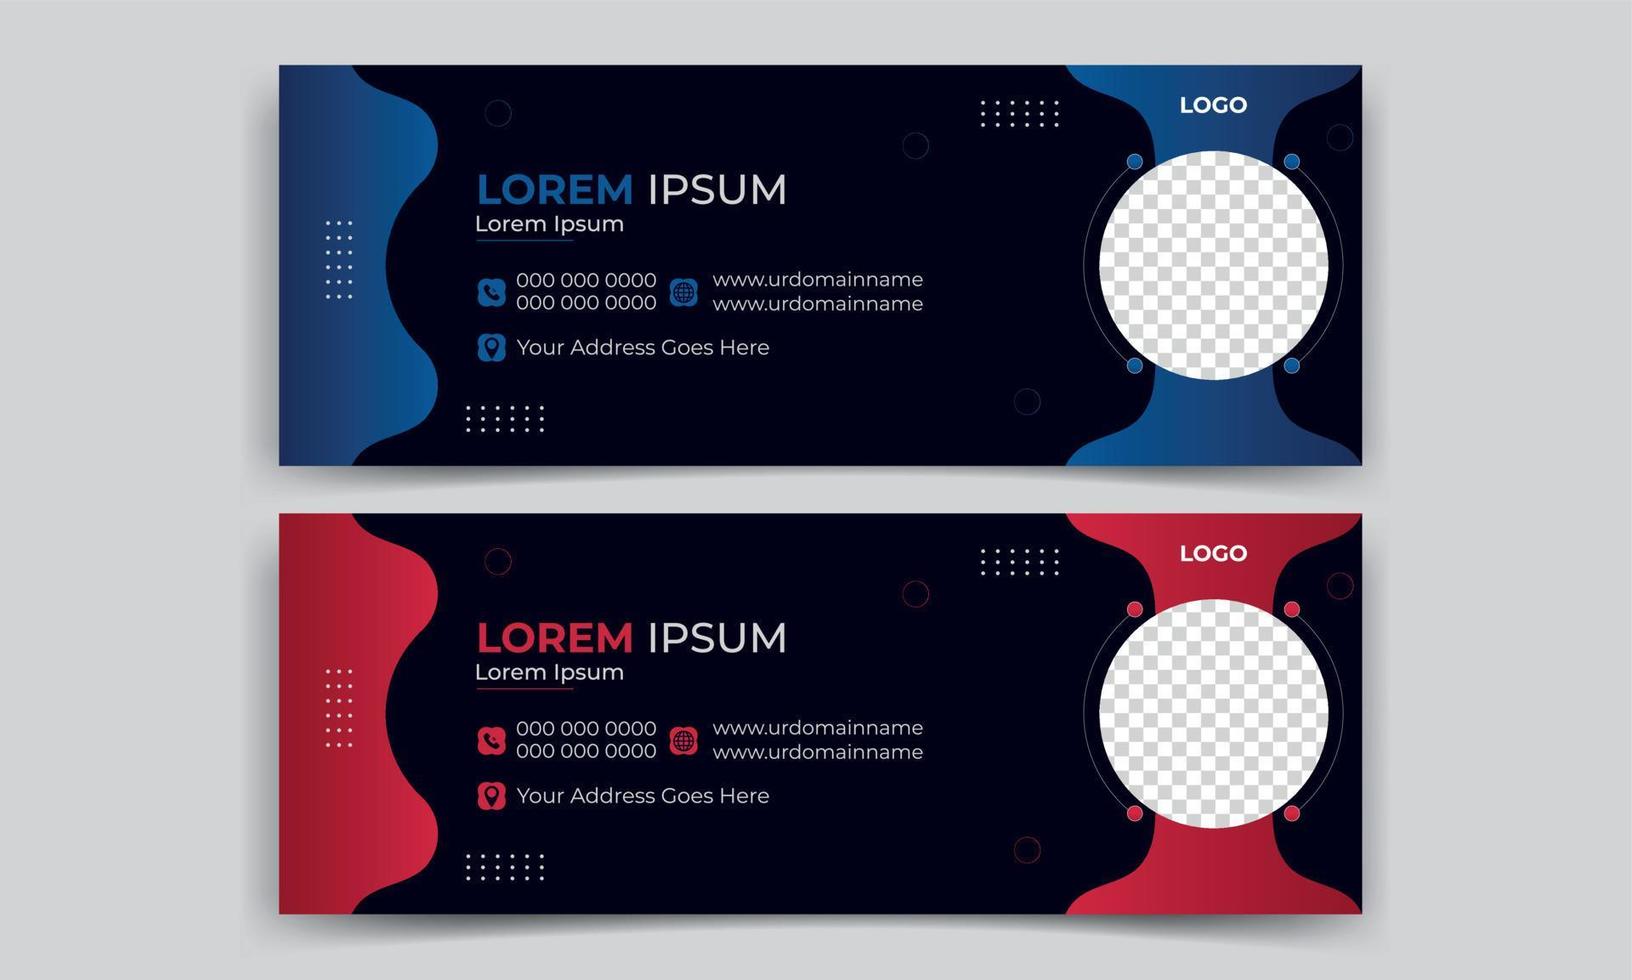 Moderne Business-E-Mail-Signatur und Facebook-Cover-Designvorlage mit zwei schönen Farben Blau und Rot vektor